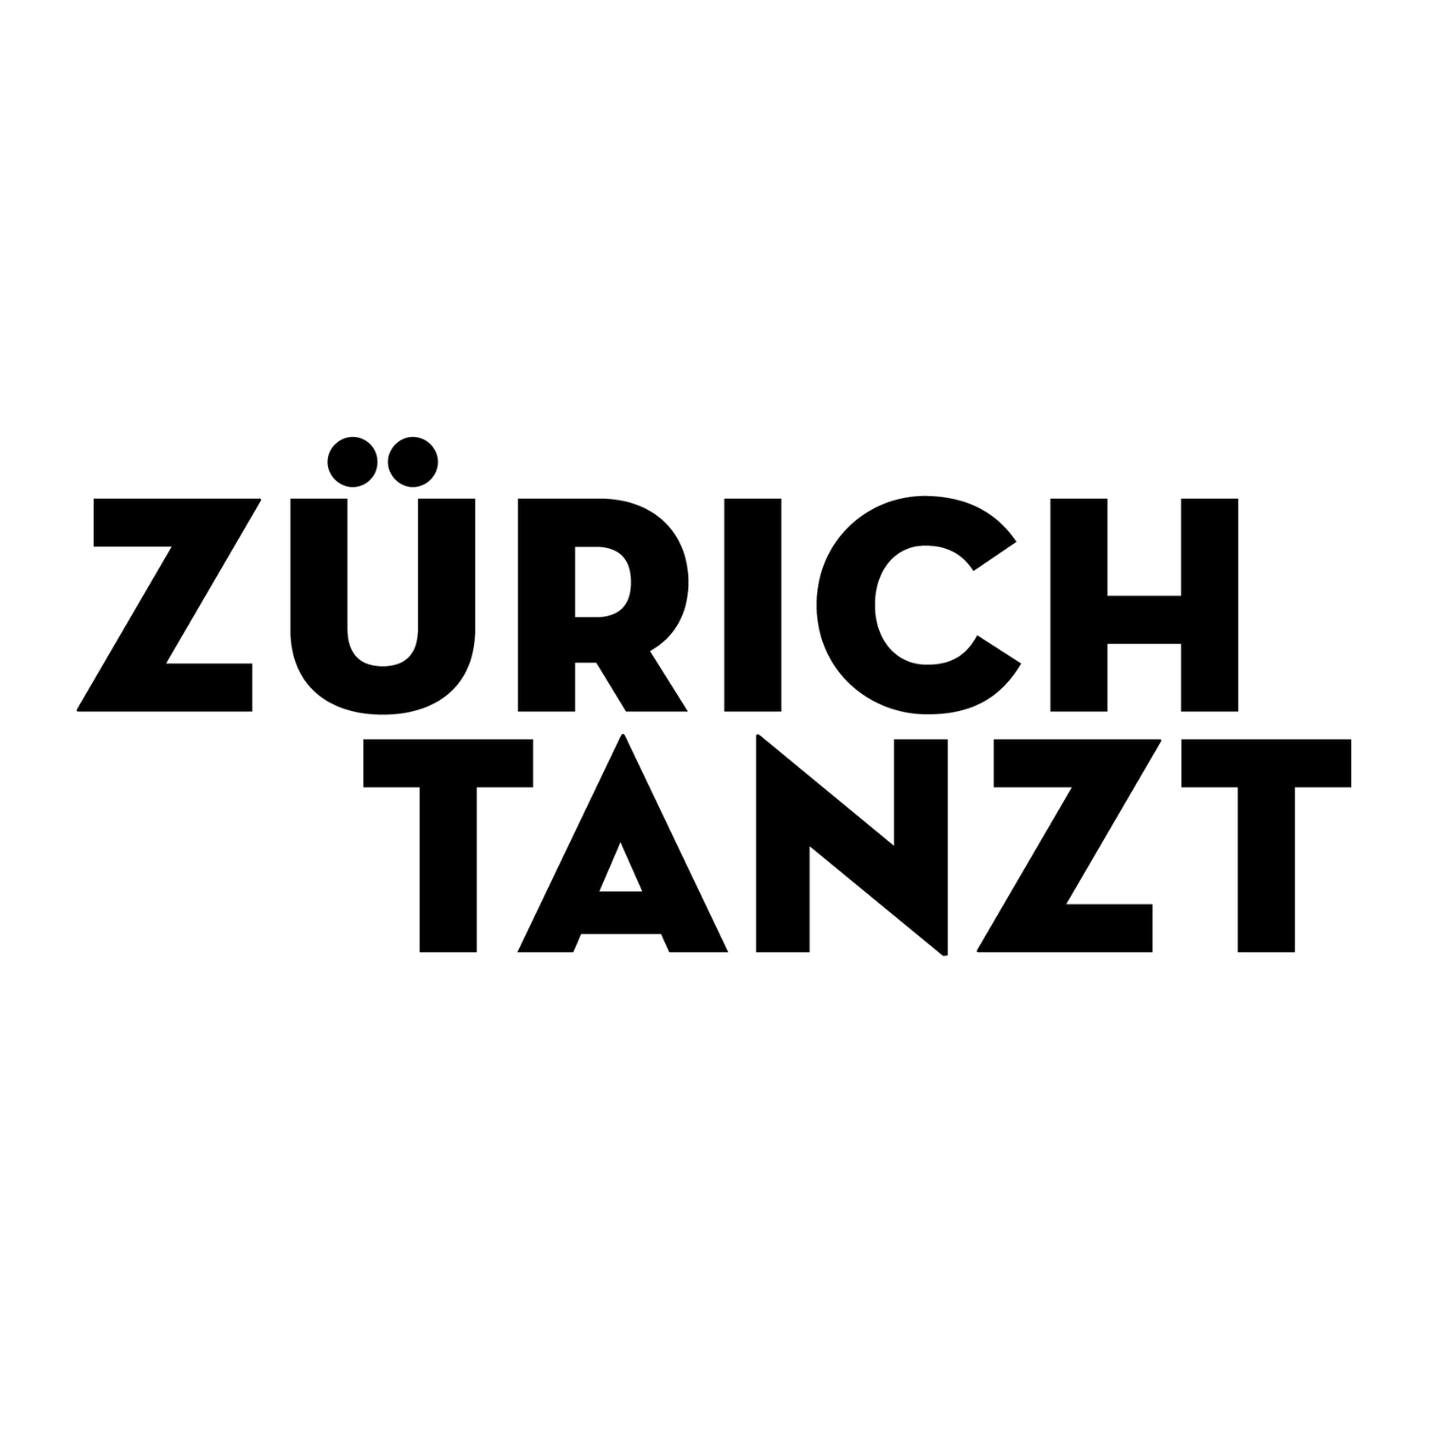 Zurich Tanzt